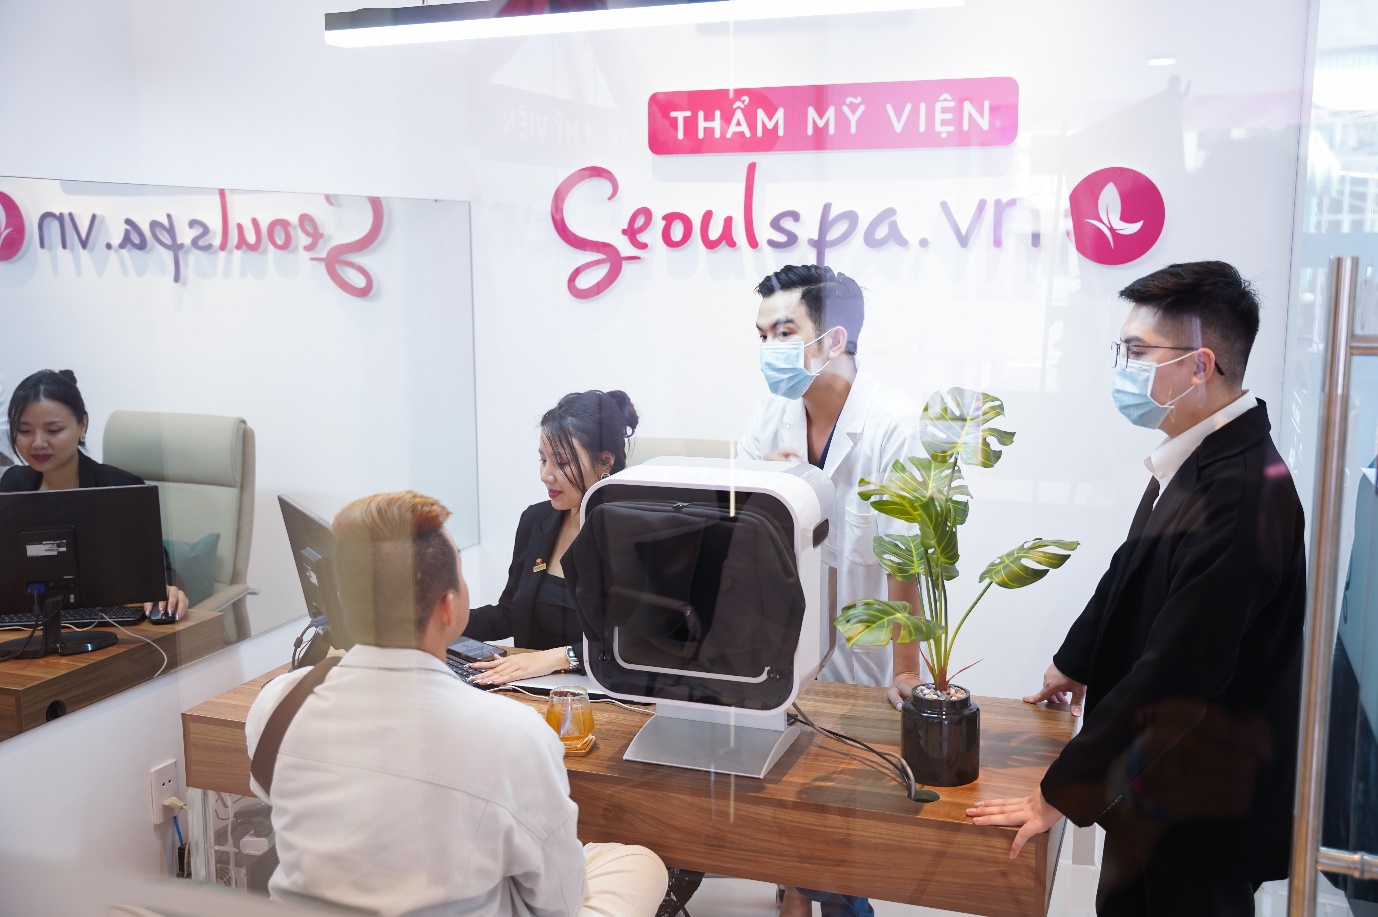 Seoul Spa Quảng Ngãi chiếm trọn “Spotlight” sau sự kiện khai trương với ưu đãi đến 1 tỷ đồng - 3